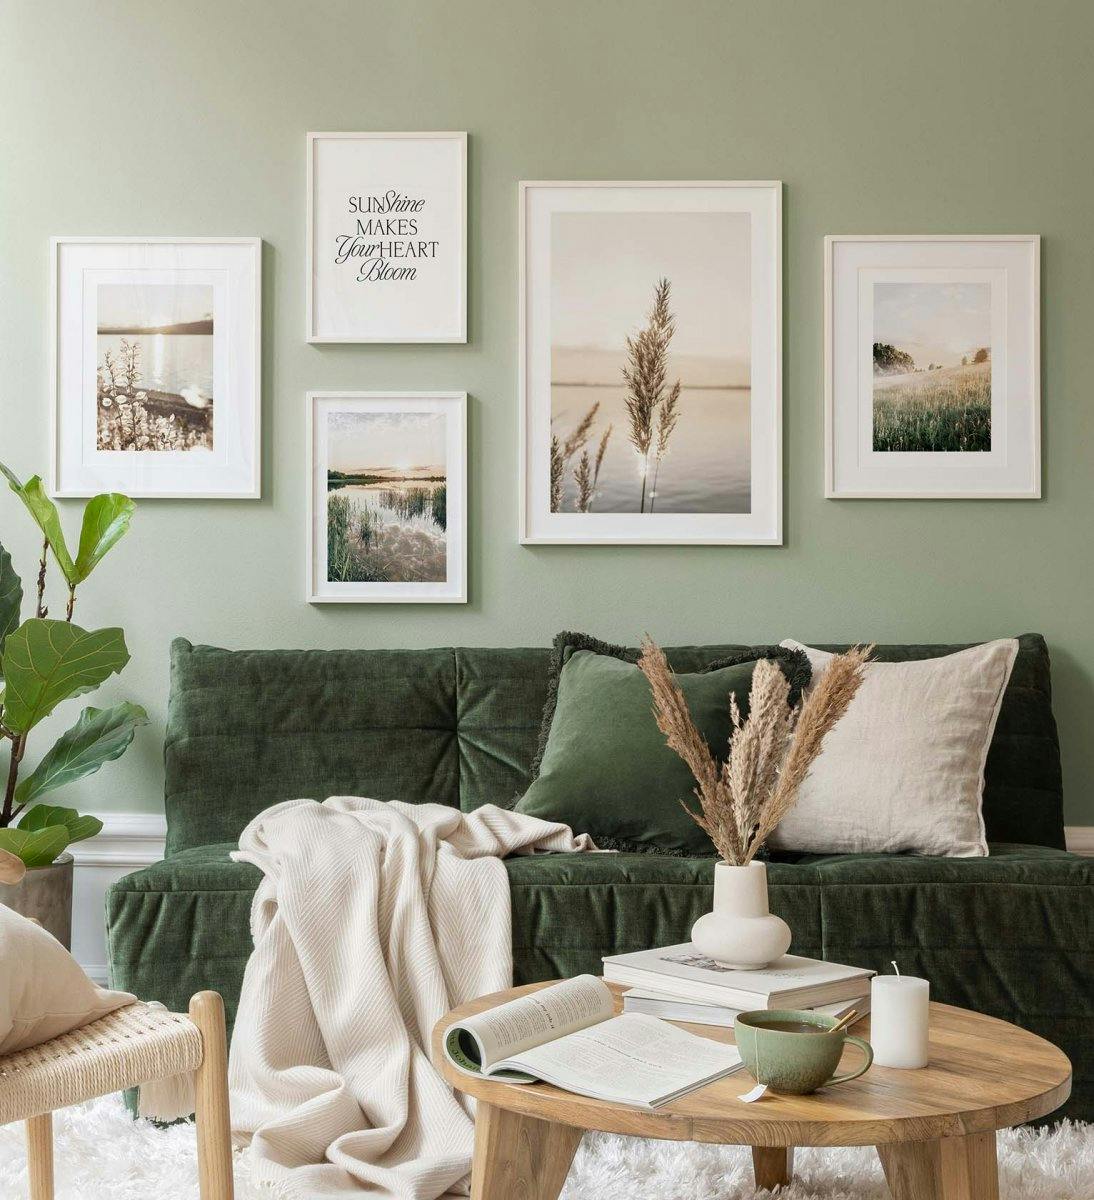 Landskabsfotografier i et grønt tema skaber en fredfyldt stemning i stuen